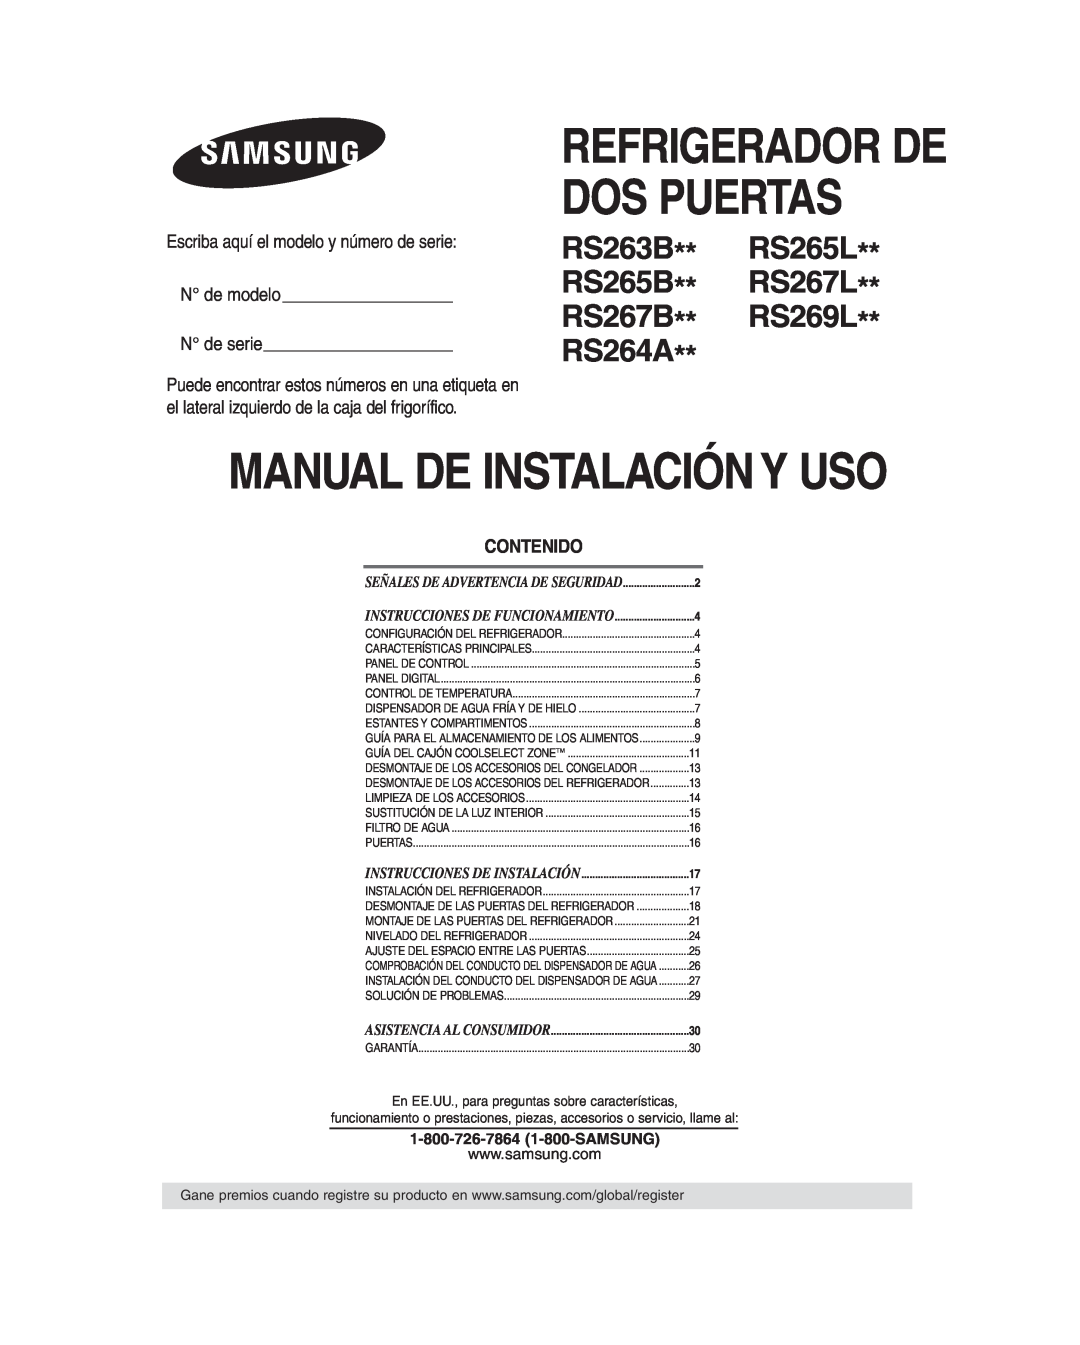 Samsung RS265B manual Escriba aquí el modelo y número de serie N de modelo N de serie, Contenido, Asistencia Al Consumidor 